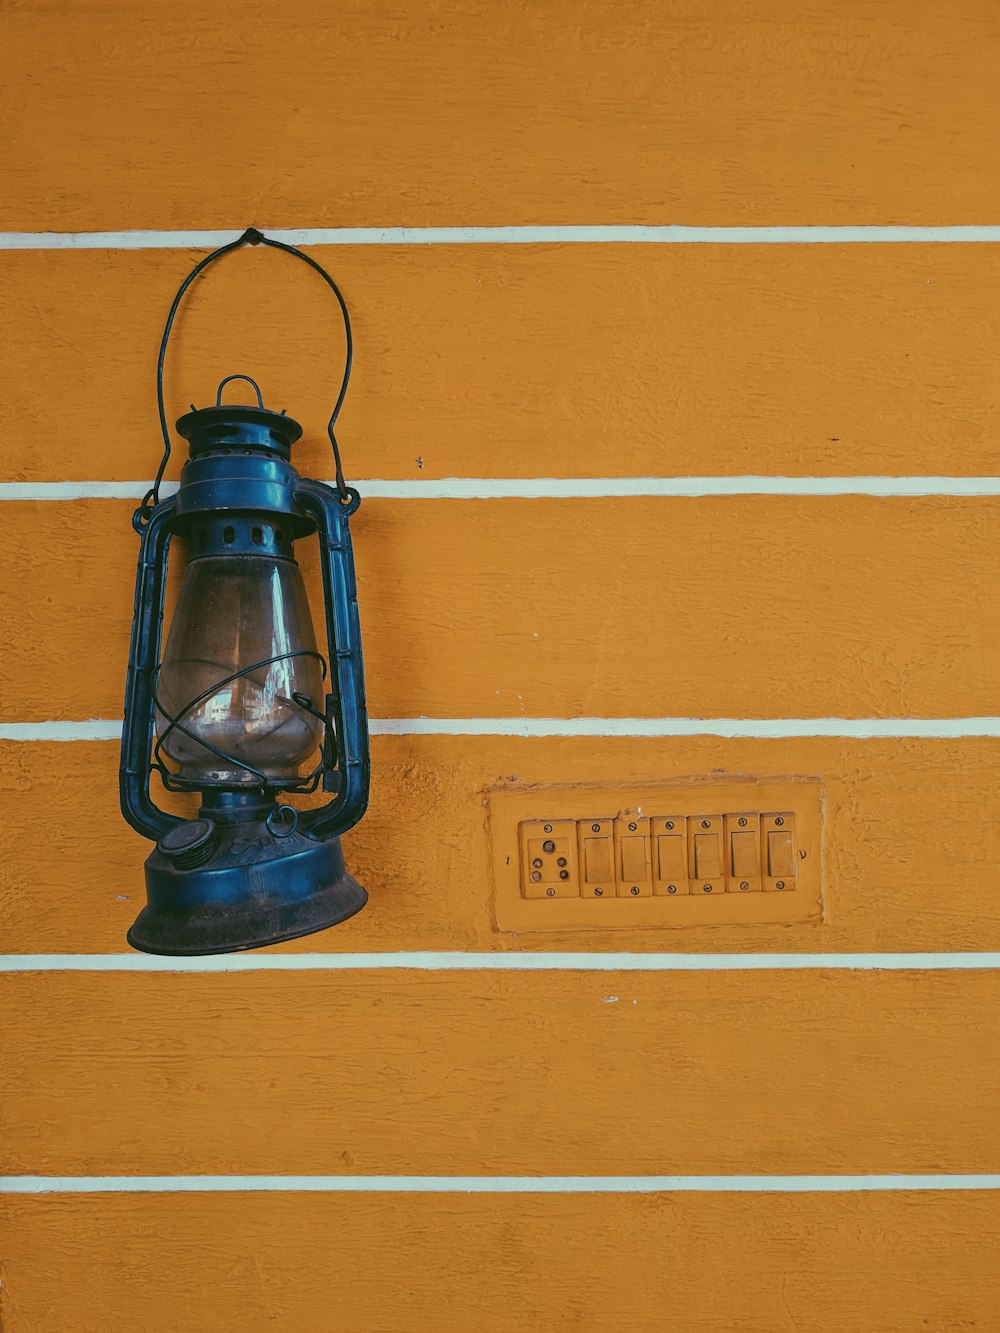 lanterna de querosene azul na parede listrada amarela e branca